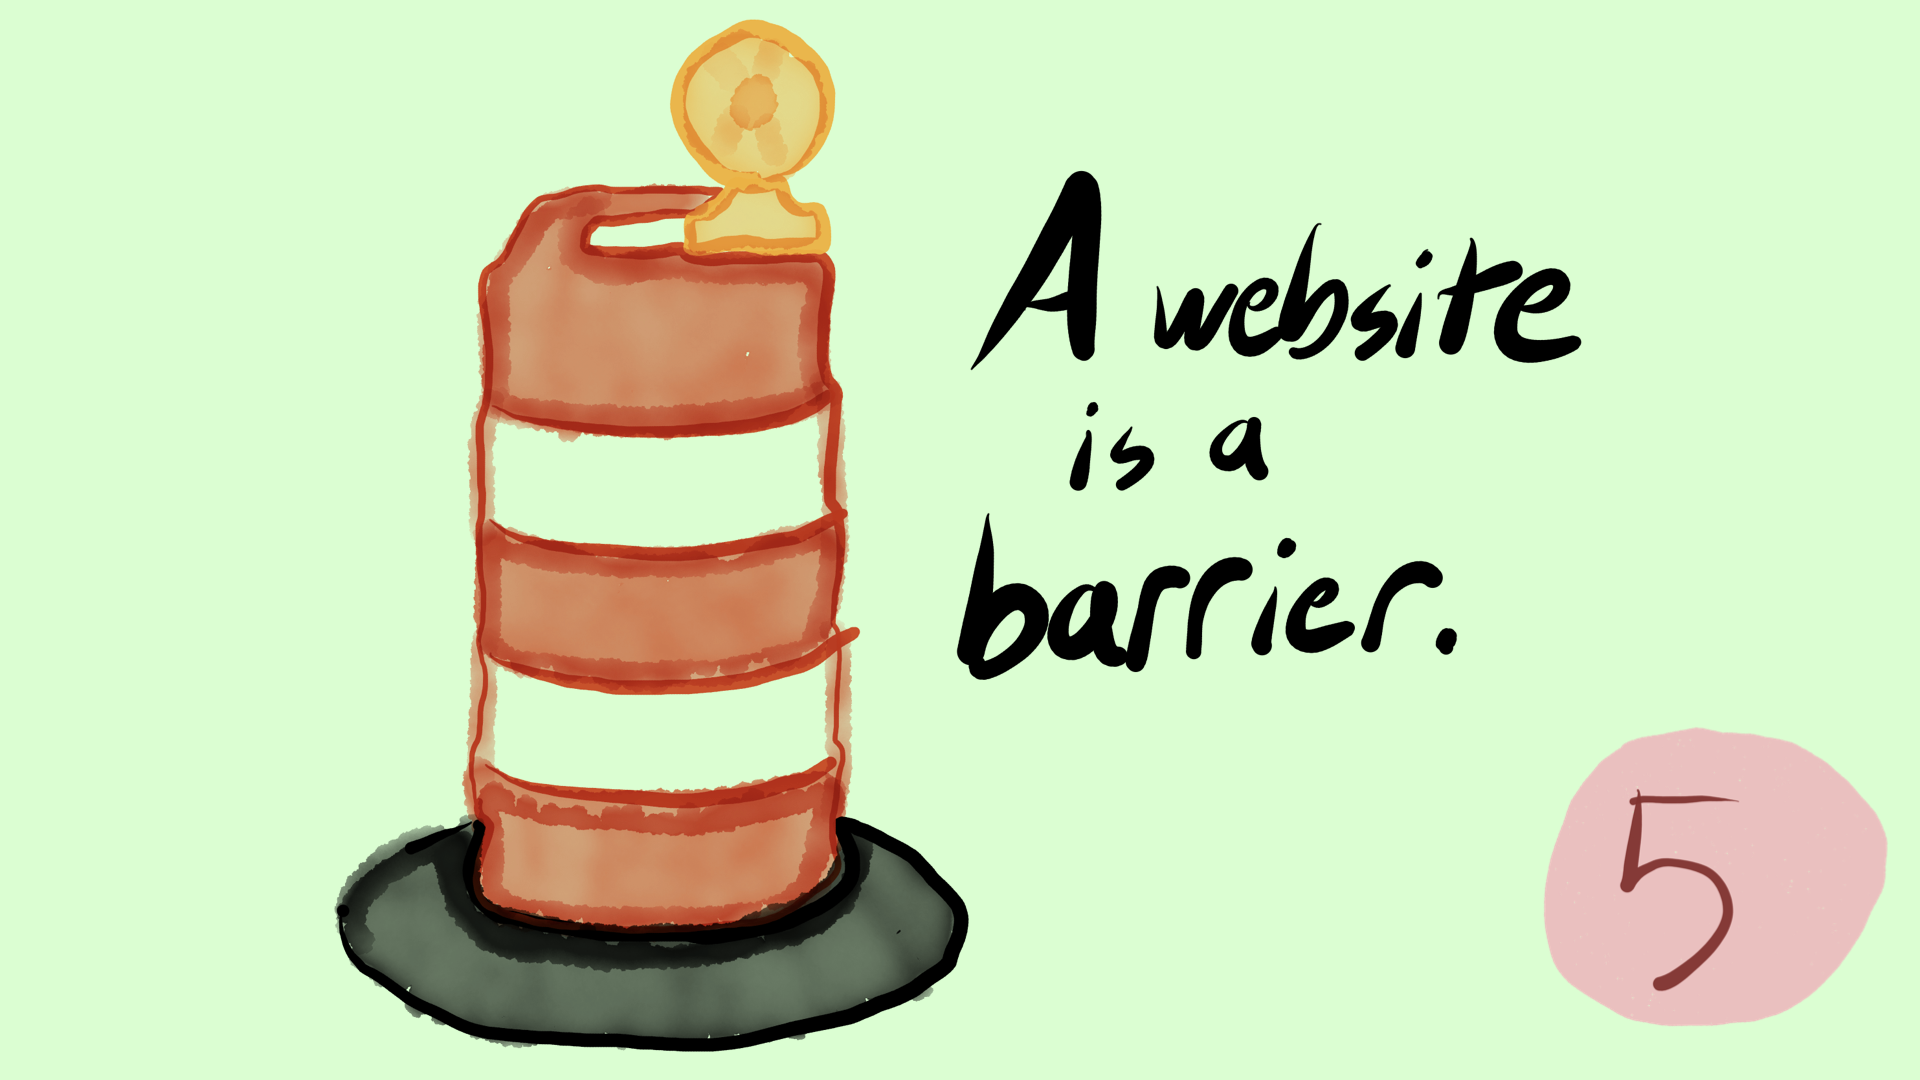 Illustration of orange road construction barrel. "A website is a barrier."